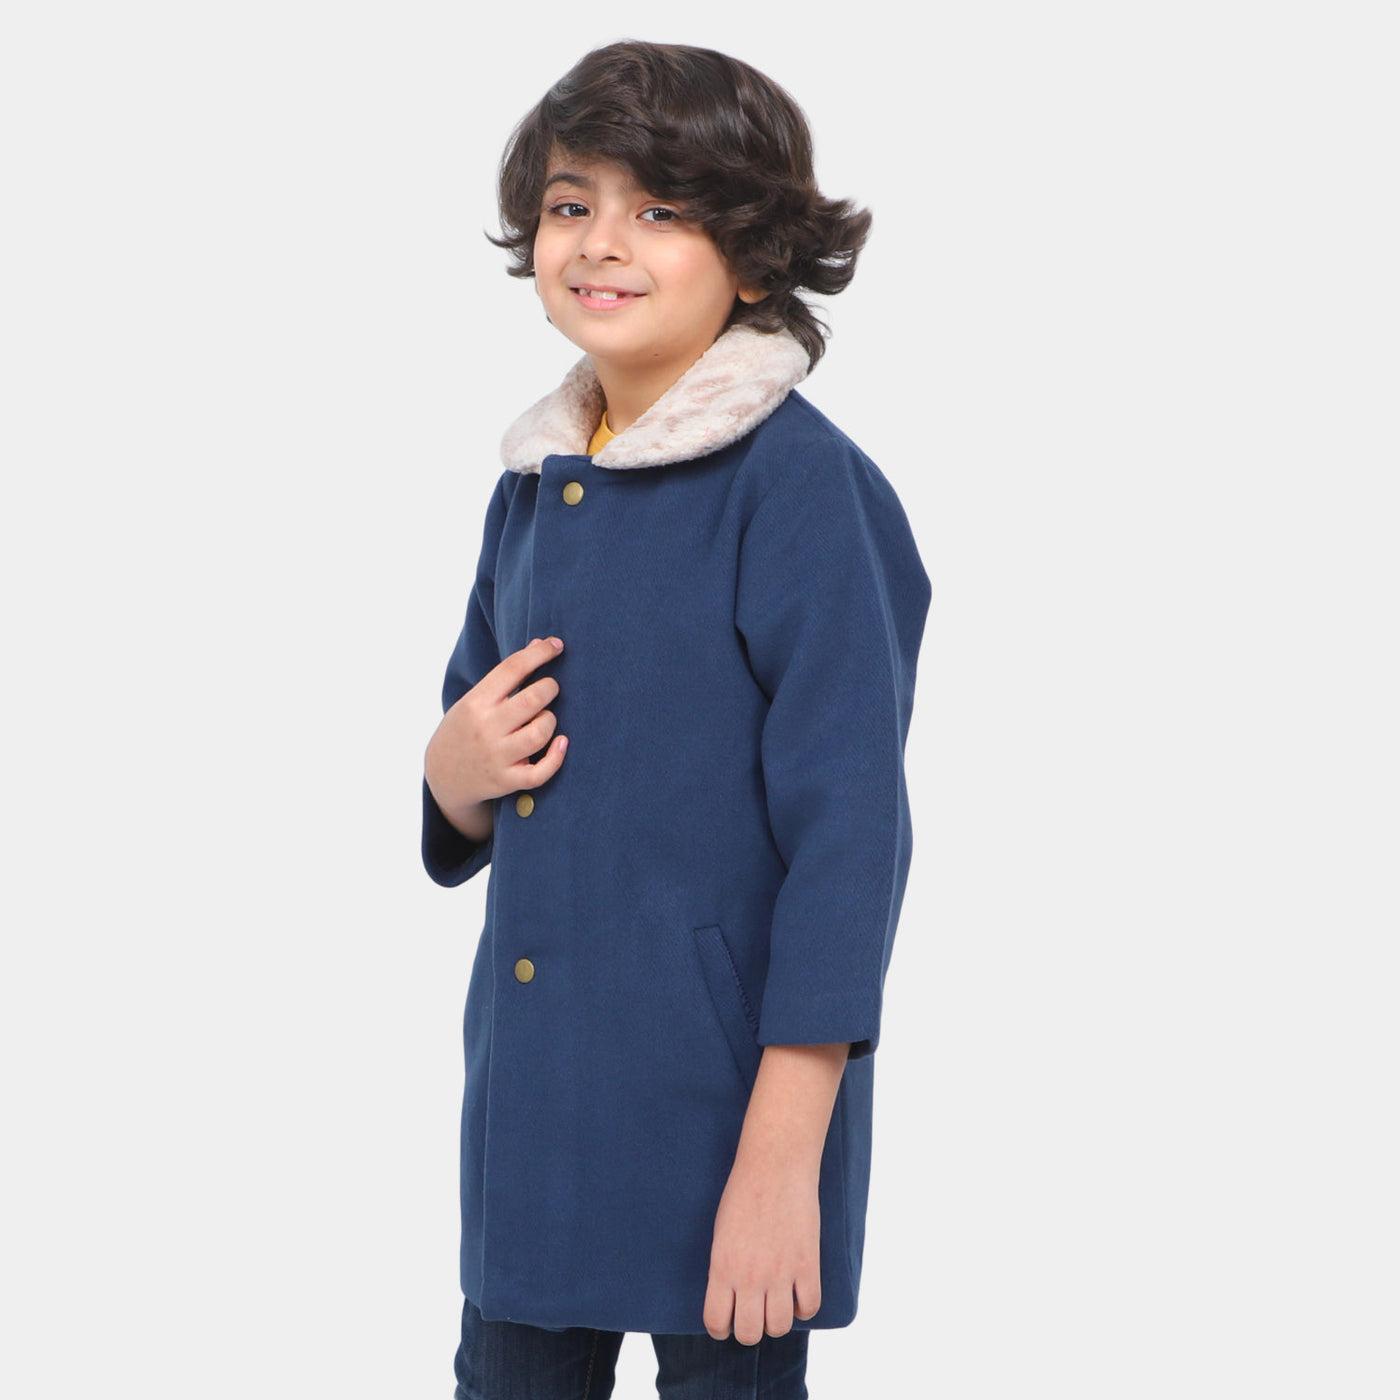 Boys Stylish Woolen Coat - Navy Blue